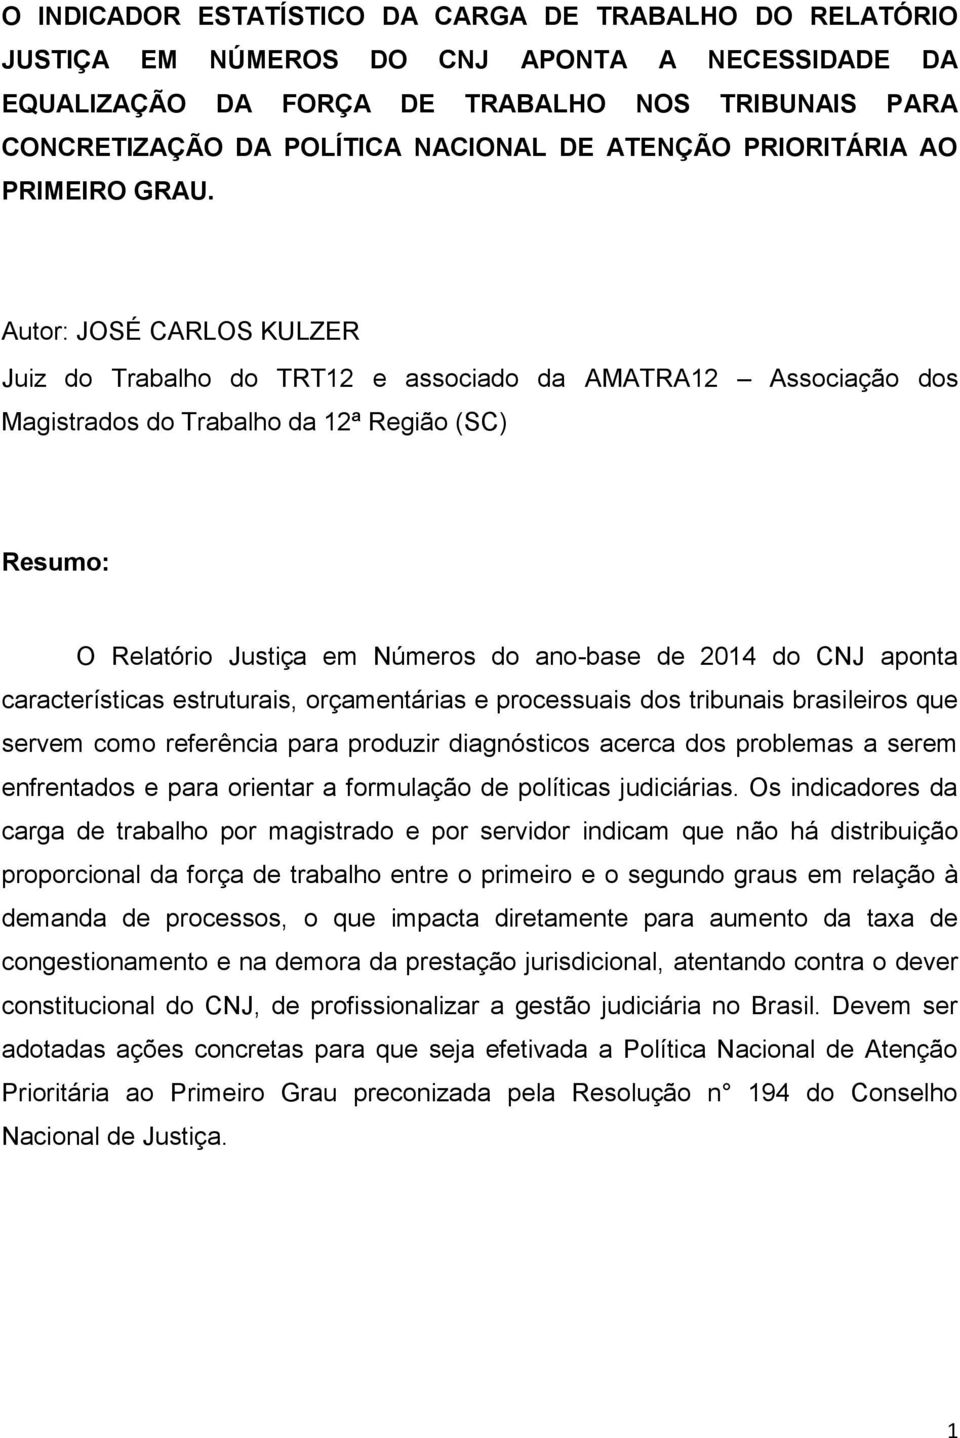 Autor: JOSÉ CARLOS KULZER Juiz do Trabalho do TRT12 e associado da AMATRA12 Associação dos Magistrados do Trabalho da 12ª Região (SC) Resumo: O Relatório Justiça em Números do ano-base de 2014 do CNJ